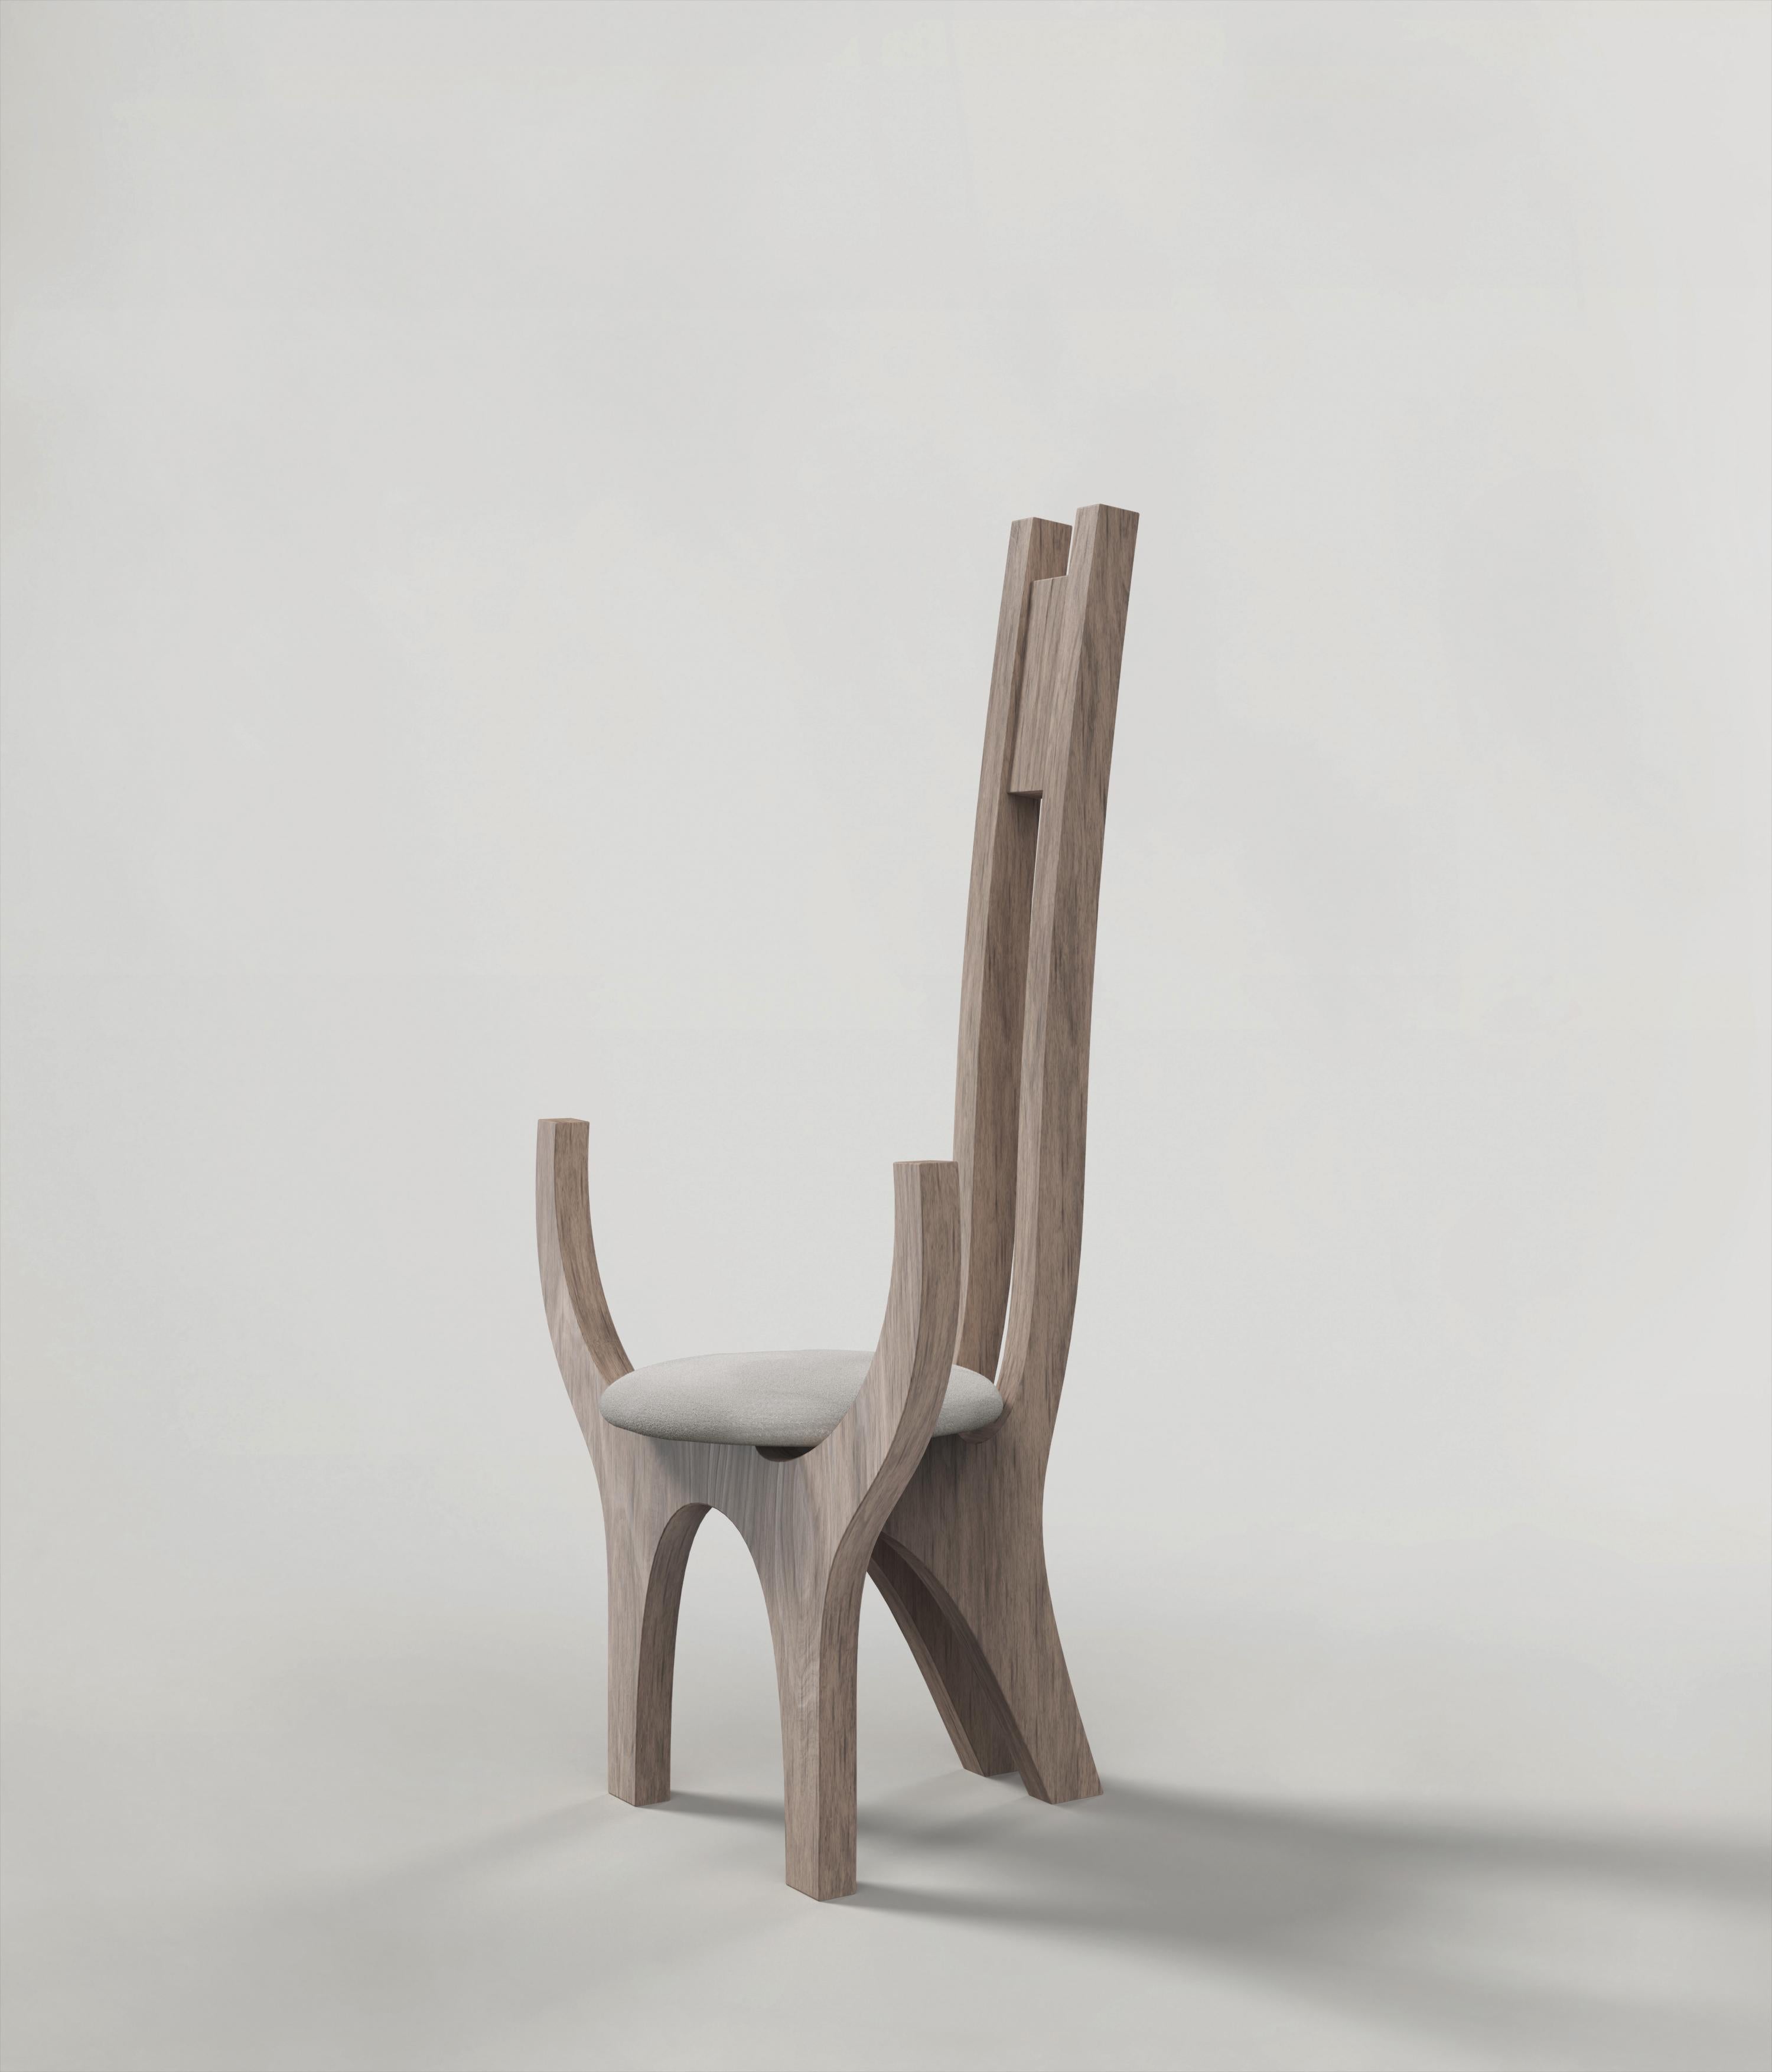 Italian Contemporary Limited Edition Ash Wood Armchair, Zero V2 by Edizione Limitata For Sale